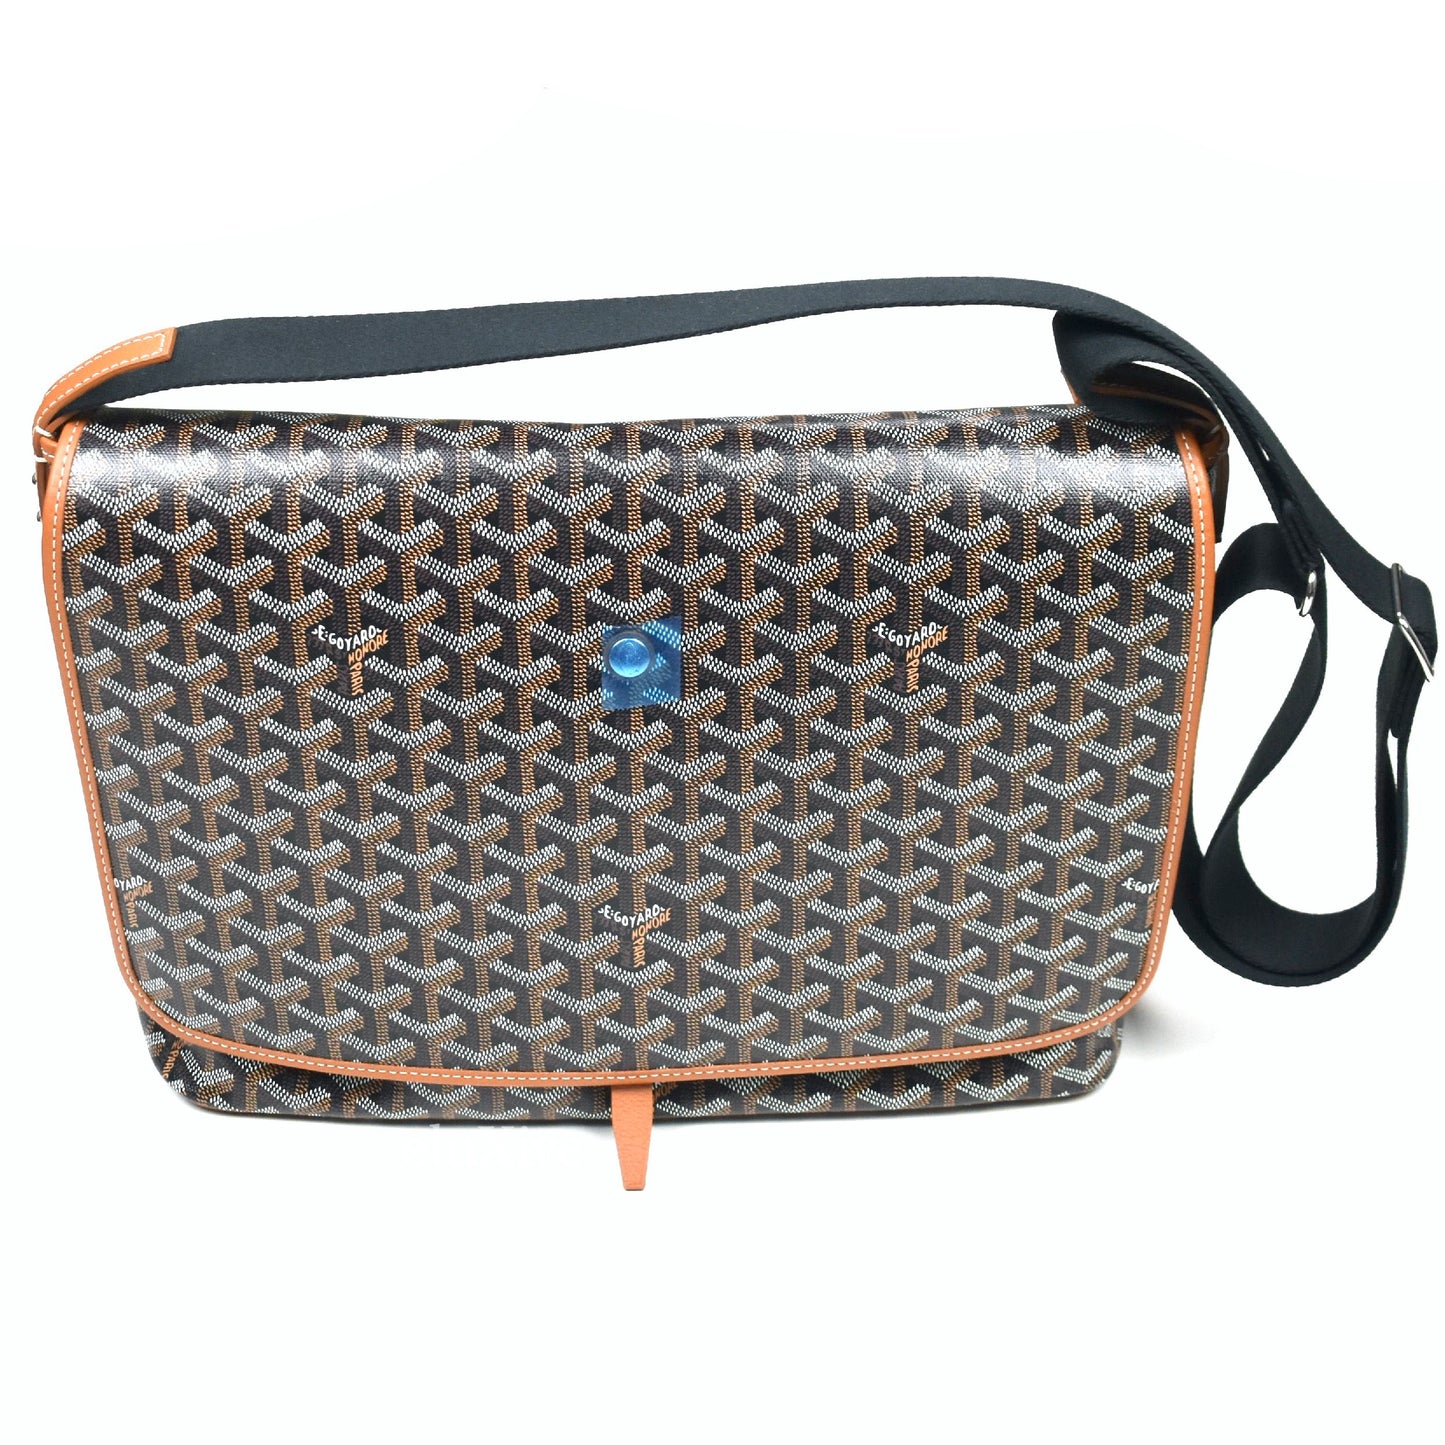 Goyard - Capetien MM Messenger / Laptop Bag (Black / Brown)